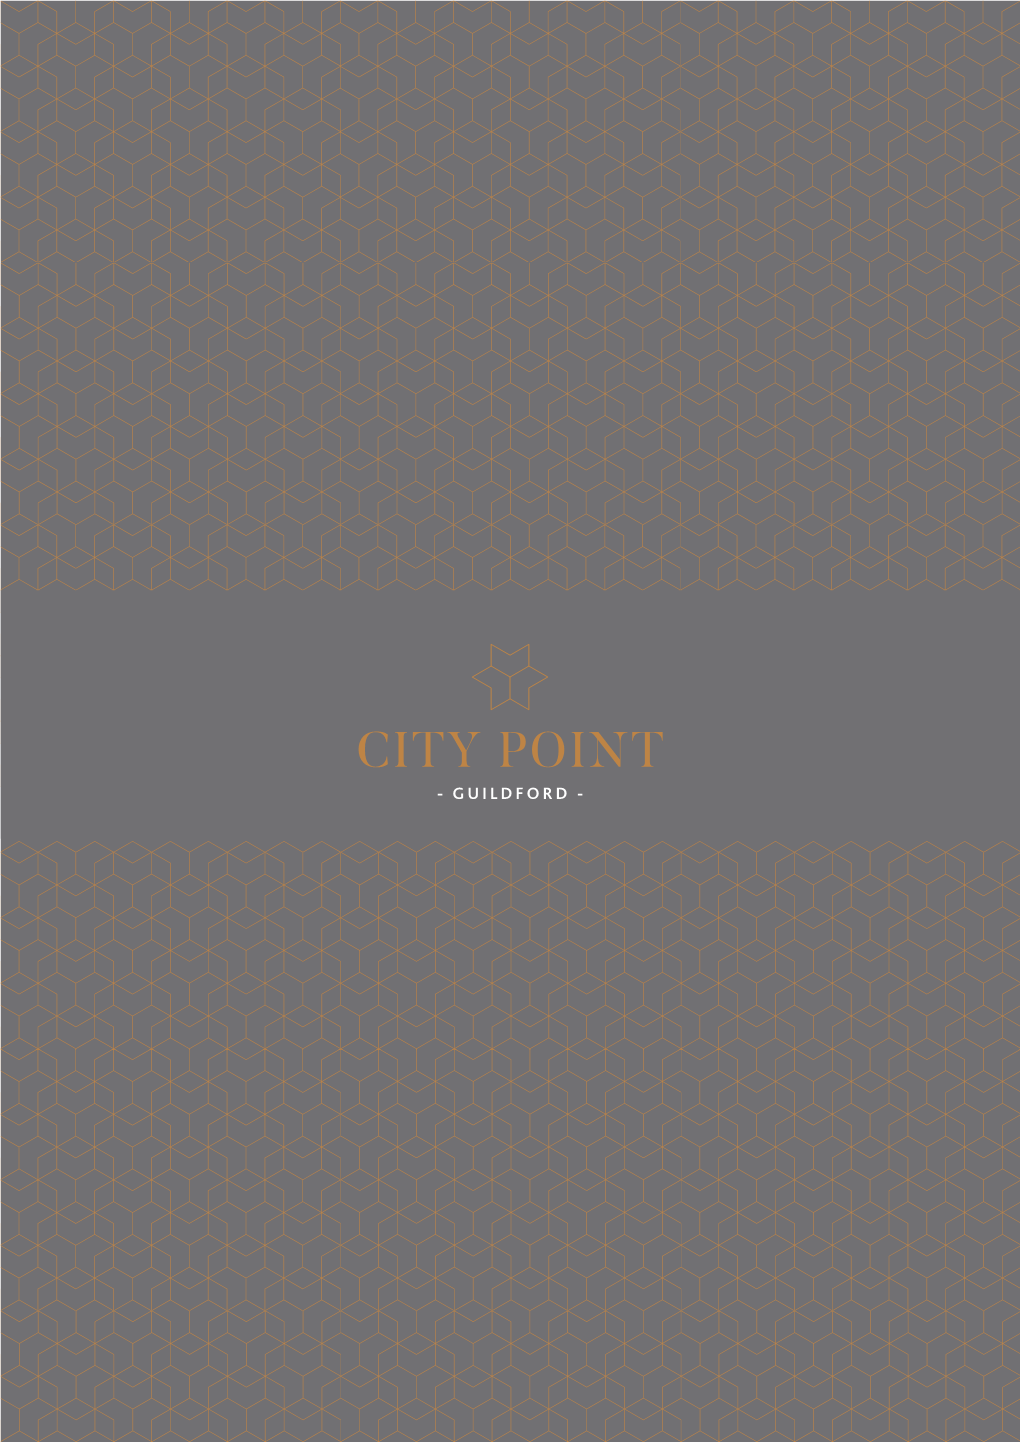 City Point - Guildford - City Point - Guildford